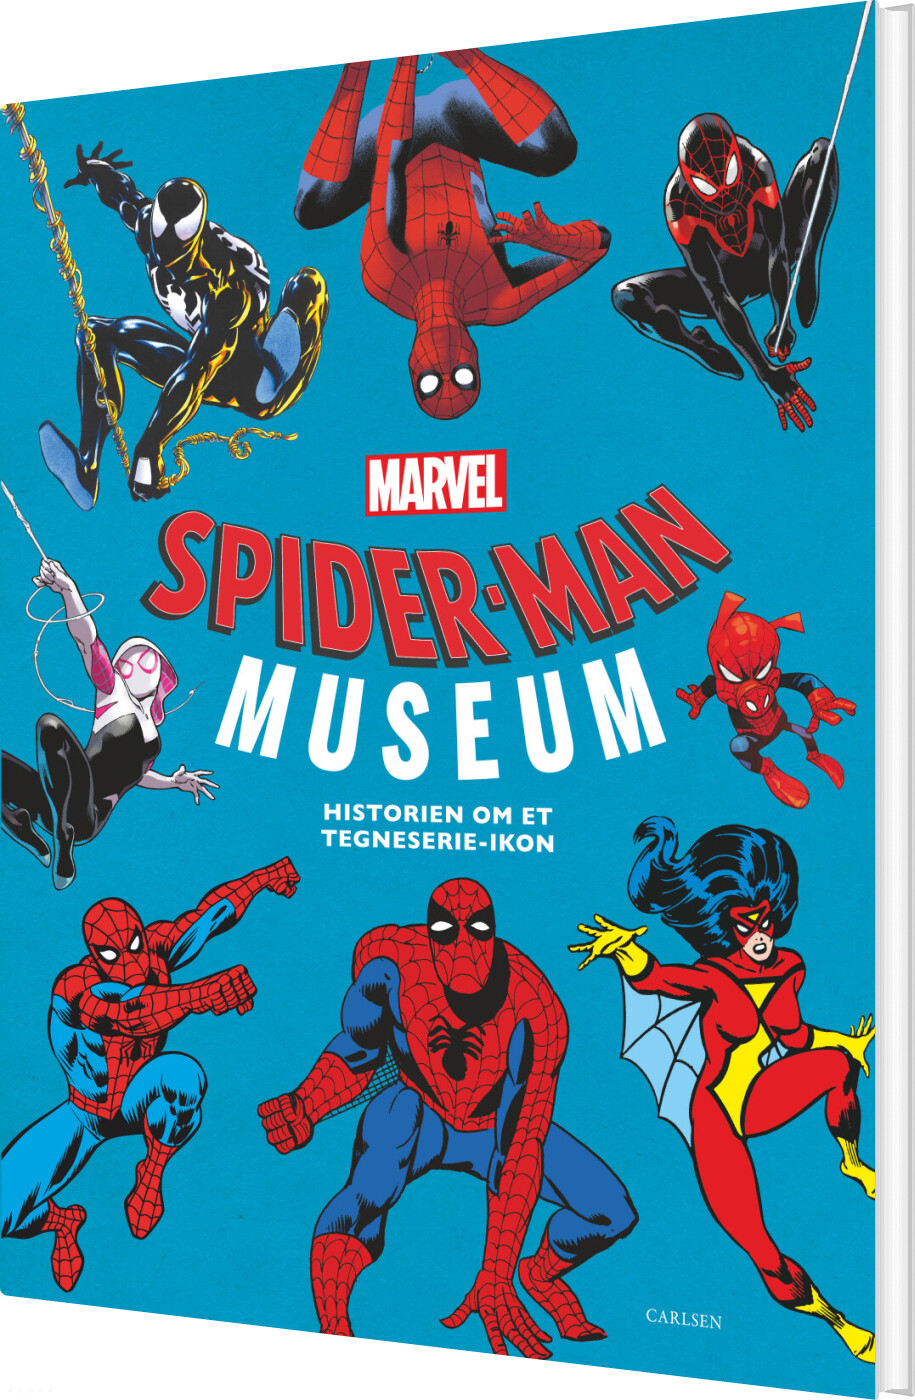 Spider-man Museum - Märvel - Bog